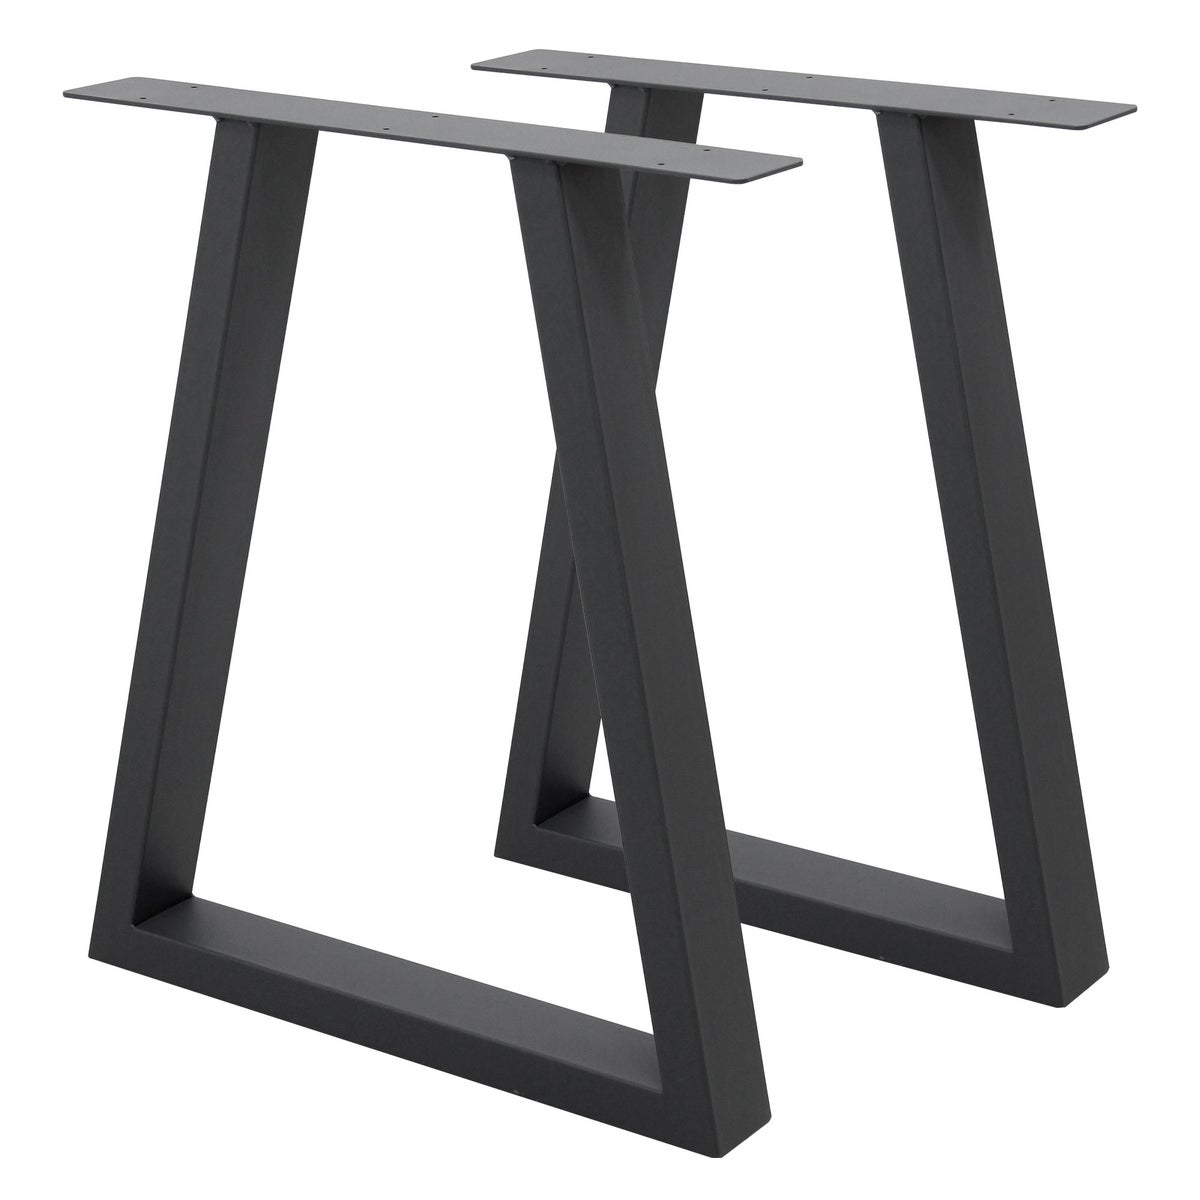 ECD Germany 2x Tischbeine Trapez Design, 60 x 72 cm, Anthrazit, pulverbeschichtete Stahl, Industriedesign, Metall Tischkufen Tischuntergestell Tischgestell Möbelfüße, für Esstisch Schreibtisch